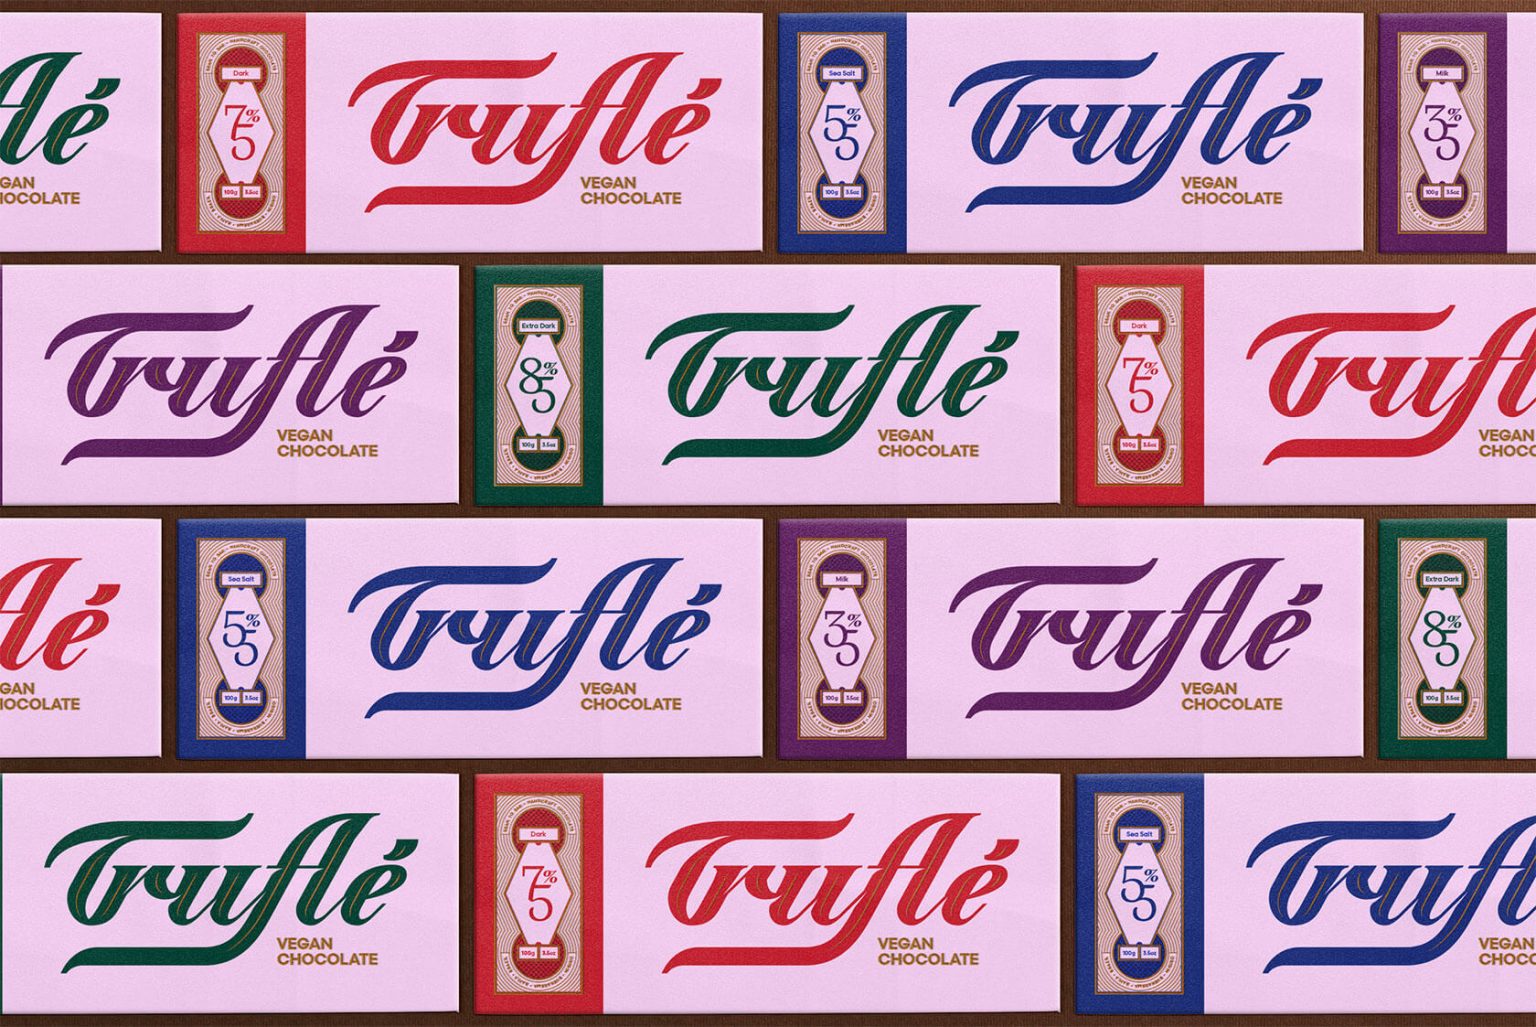 Truflé Vegan巧克力品牌包装设计